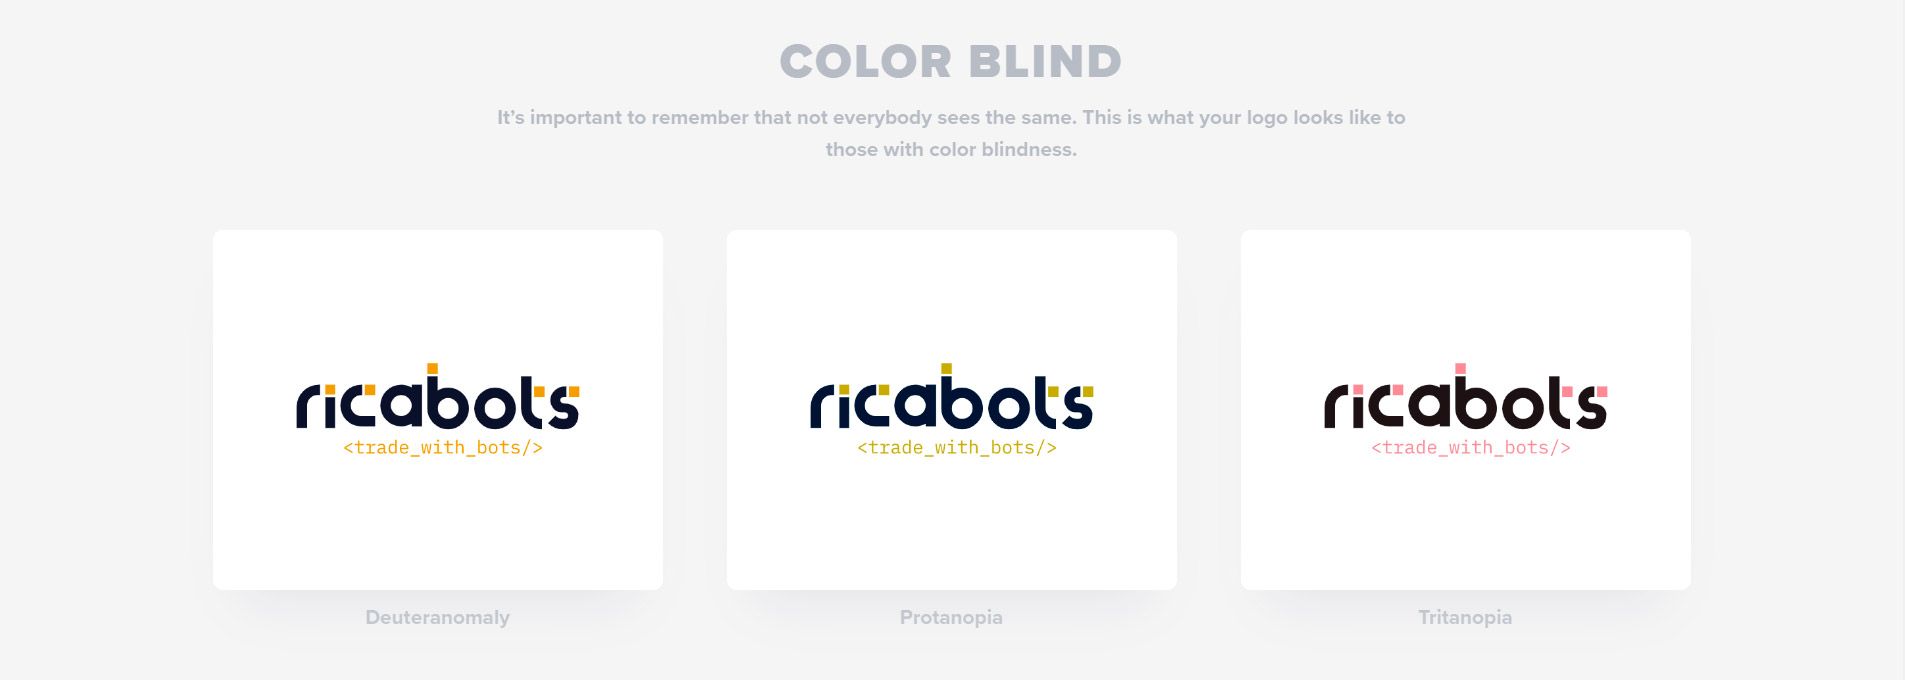 Logolab - color blind